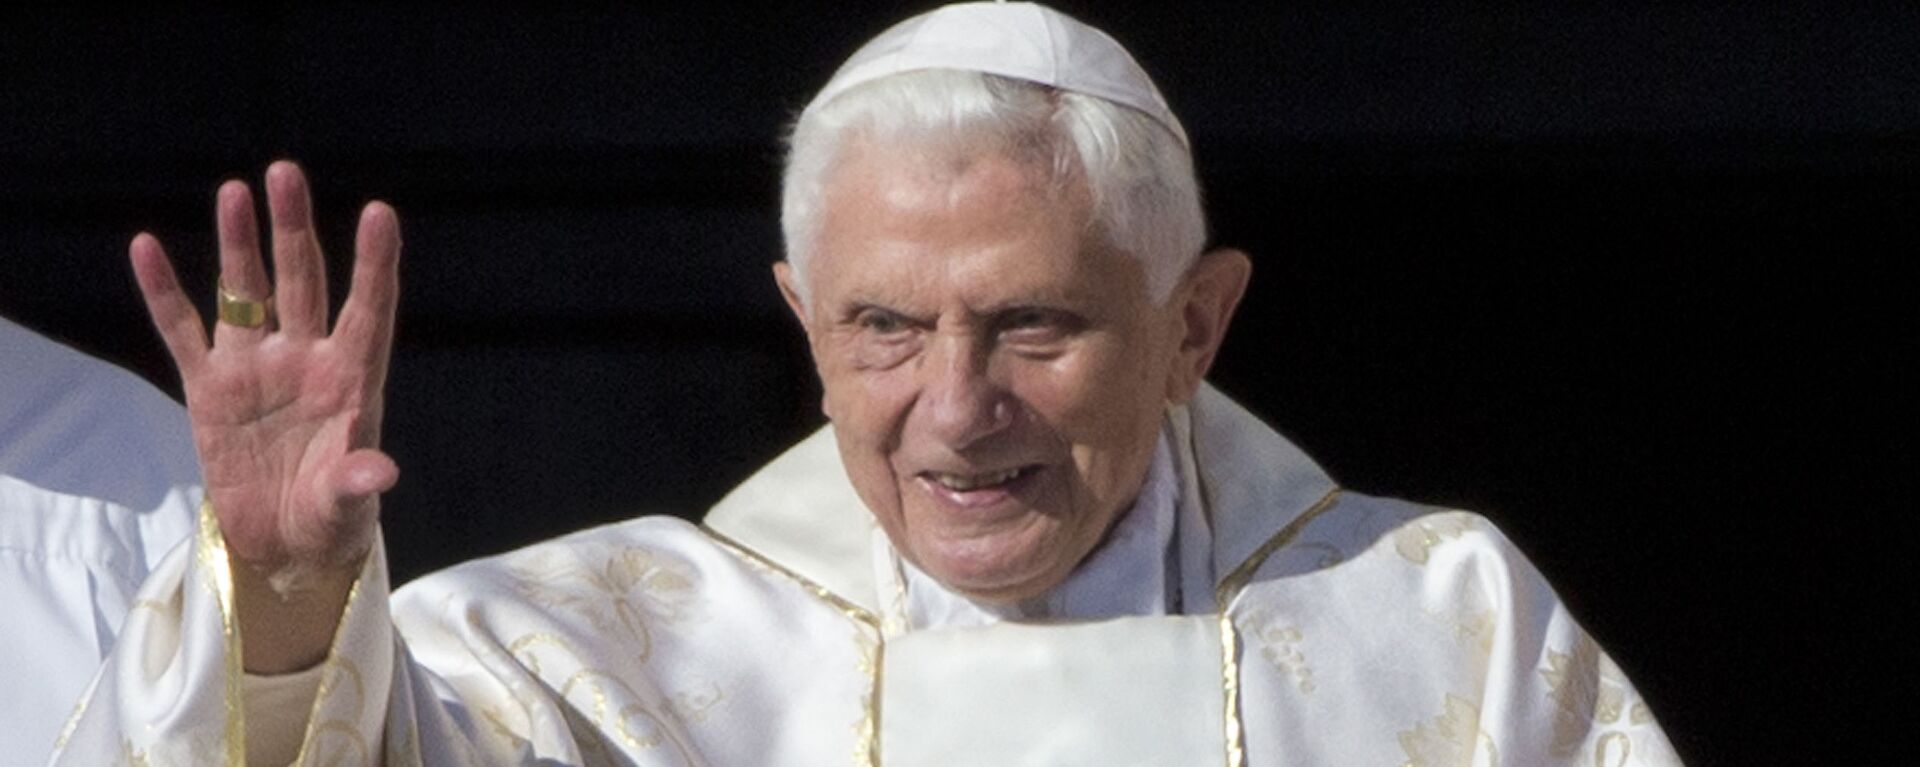 El papa emérito Benedicto XVI - Sputnik Mundo, 1920, 22.06.2022